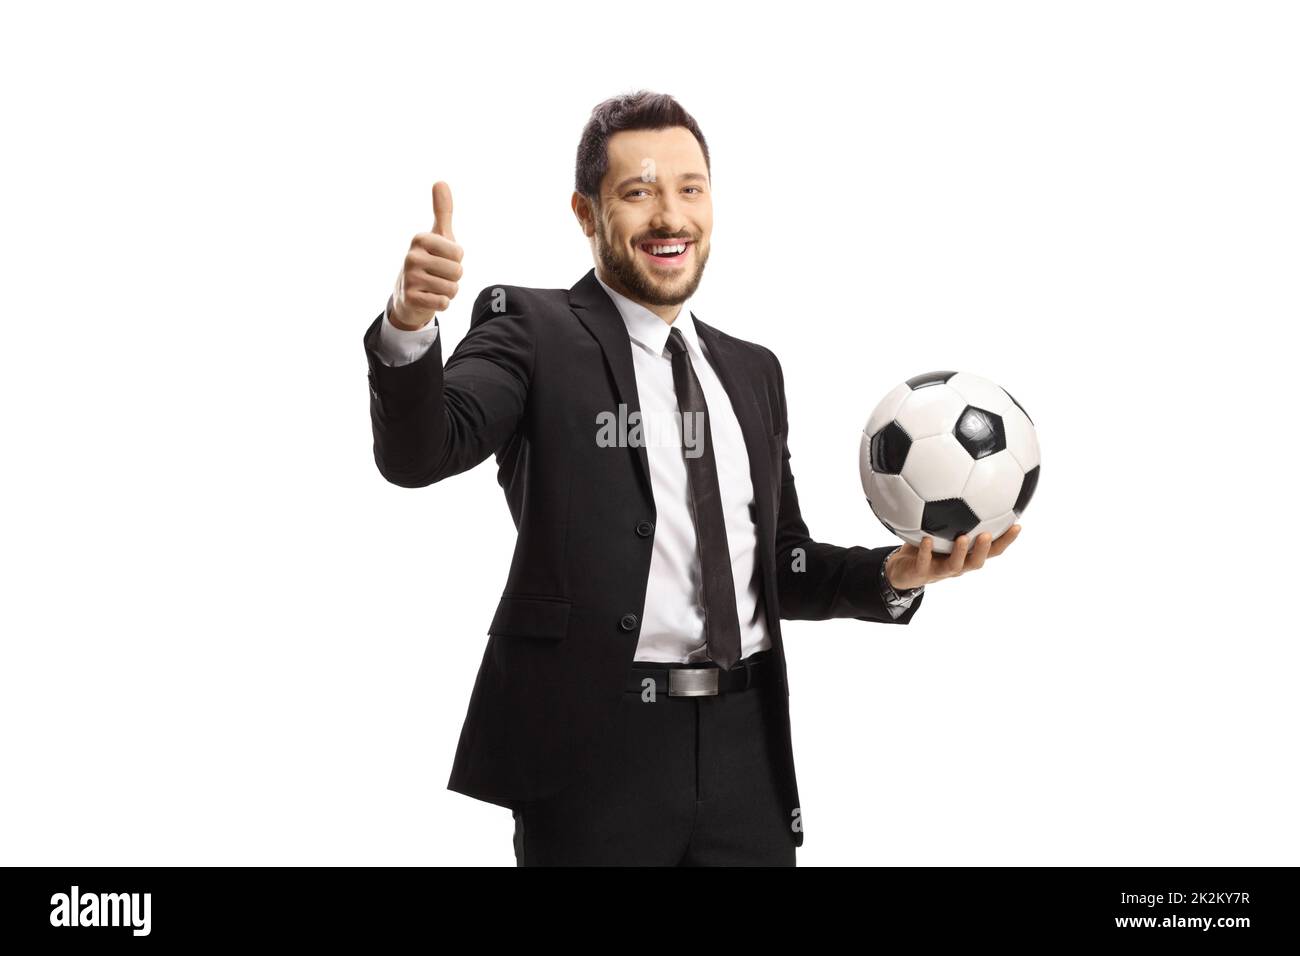 Uomo allegro in una tuta nera che tiene un calcio e mostra i pollici isolato su sfondo bianco Foto Stock